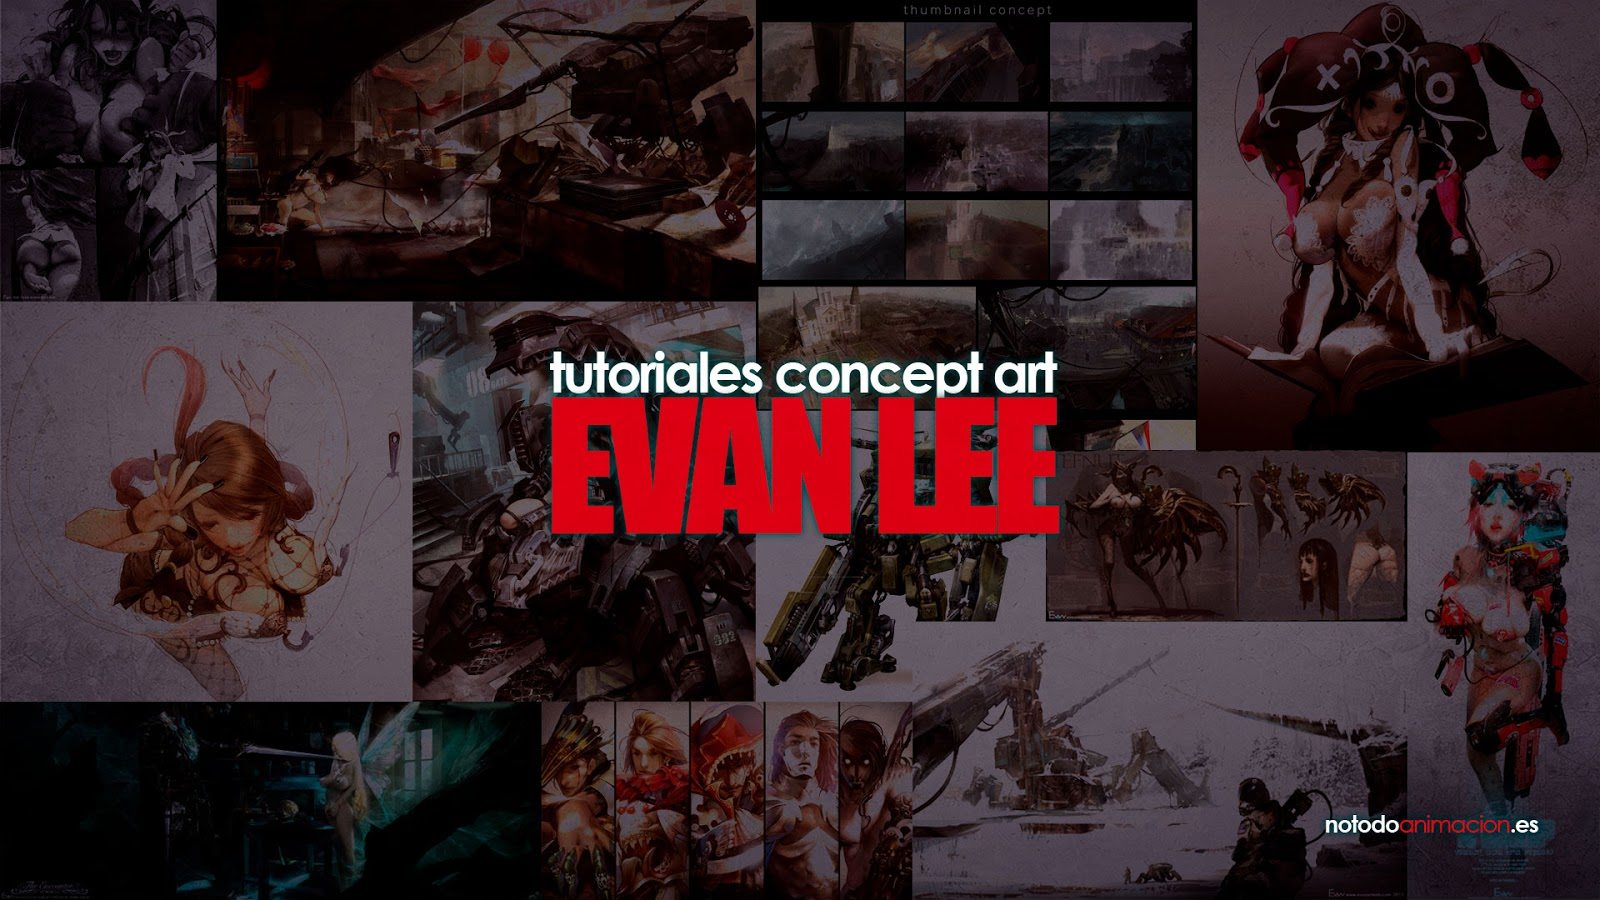 Tutoriales de Concept Art - Evan Lee